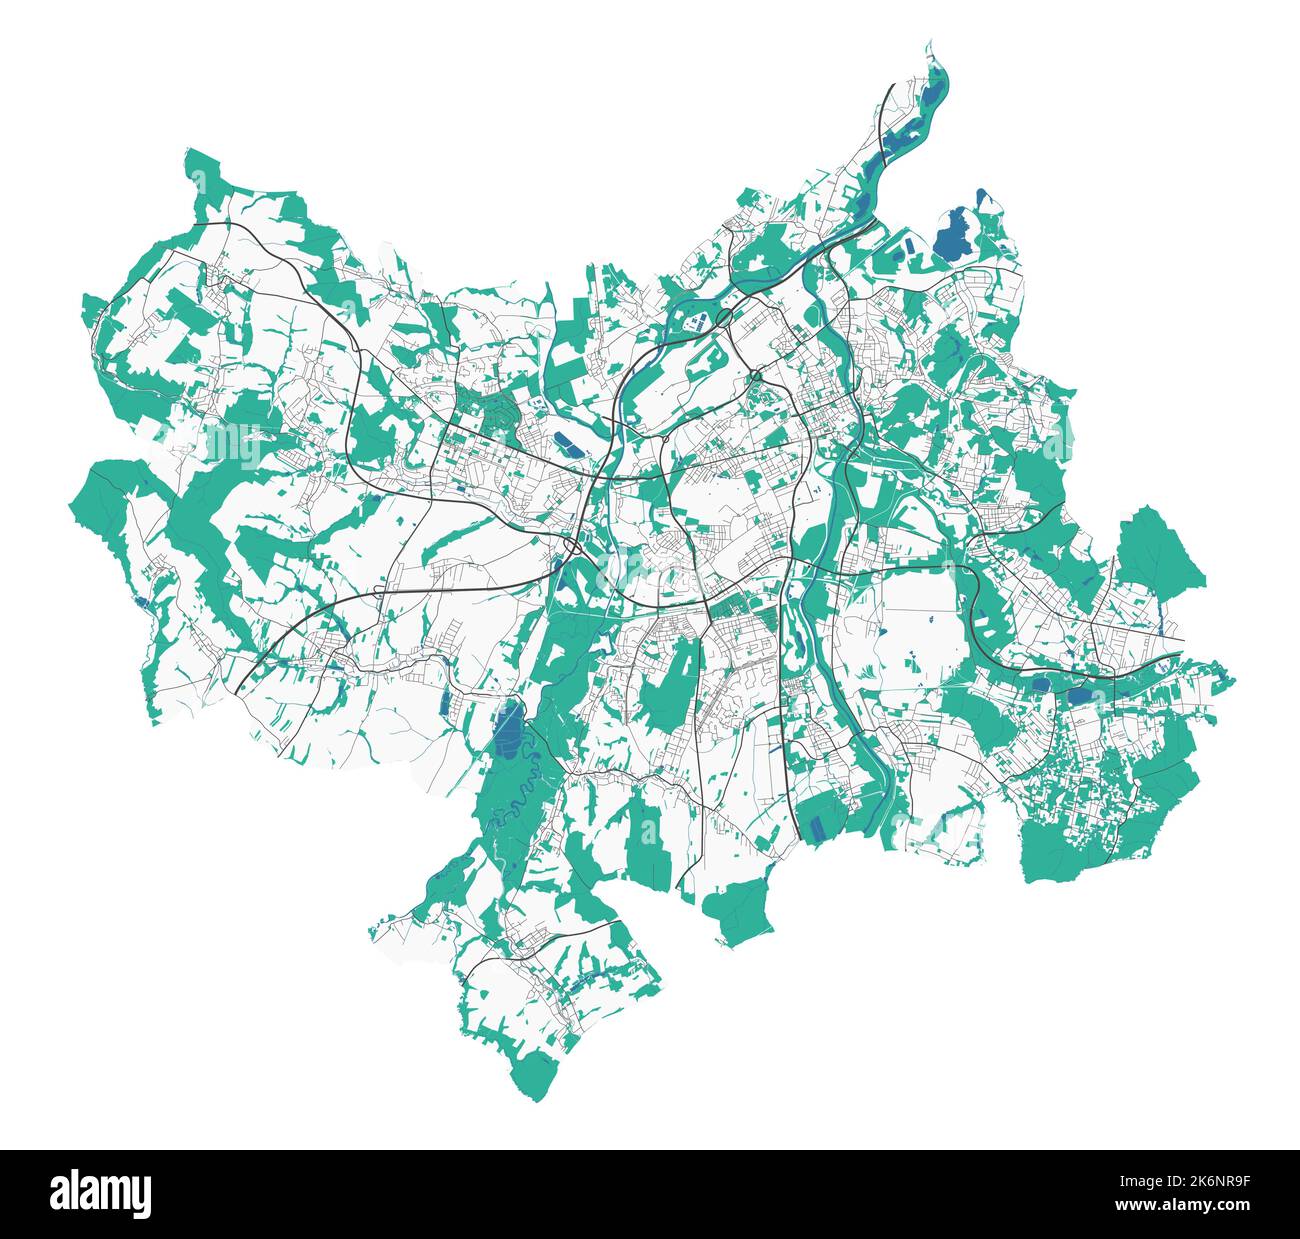 Mappa di Ostrava. Mappa dettagliata dell'area amministrativa della città di Ostrava. Panorama urbano. Illustrazione vettoriale senza royalty. Mappa stradale con autostrade, fiumi. Illustrazione Vettoriale